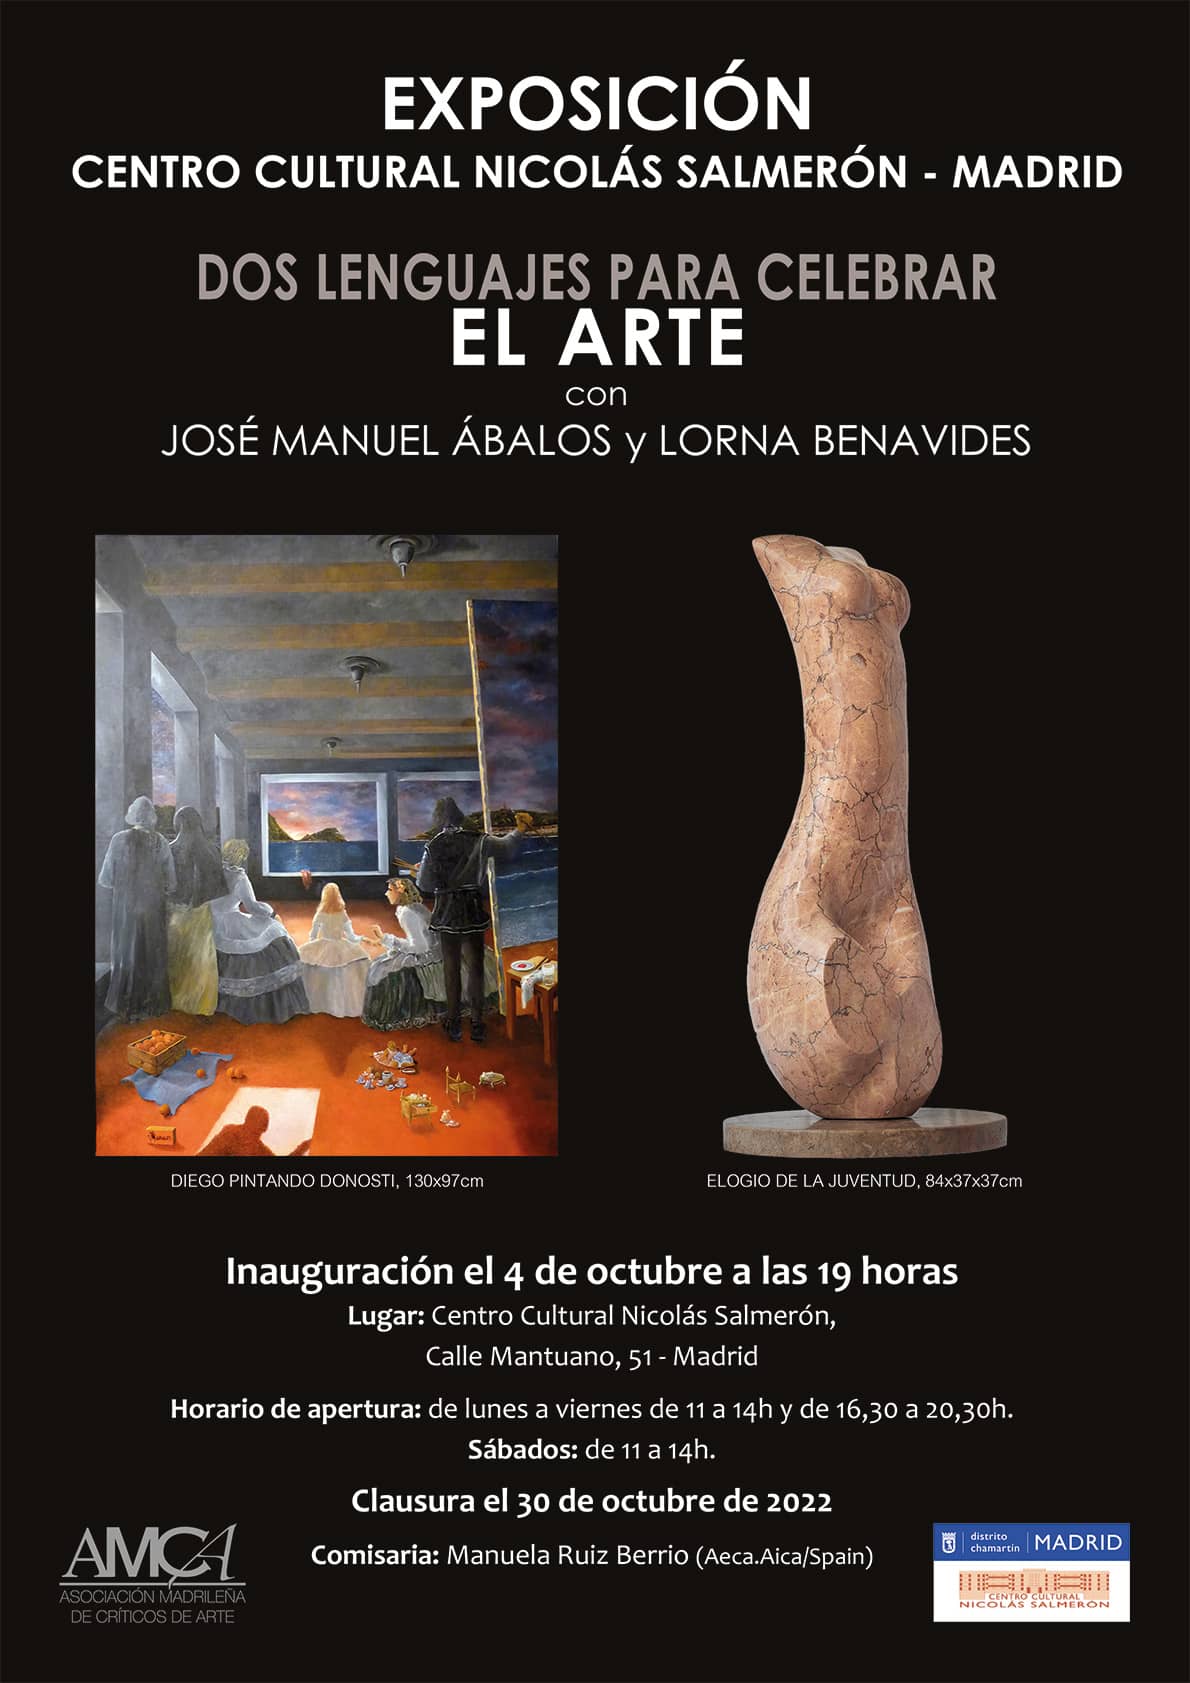 Exposición en Madrid (centro cultural nicolás salmerón) del 4 al 29 de octubre de 2022